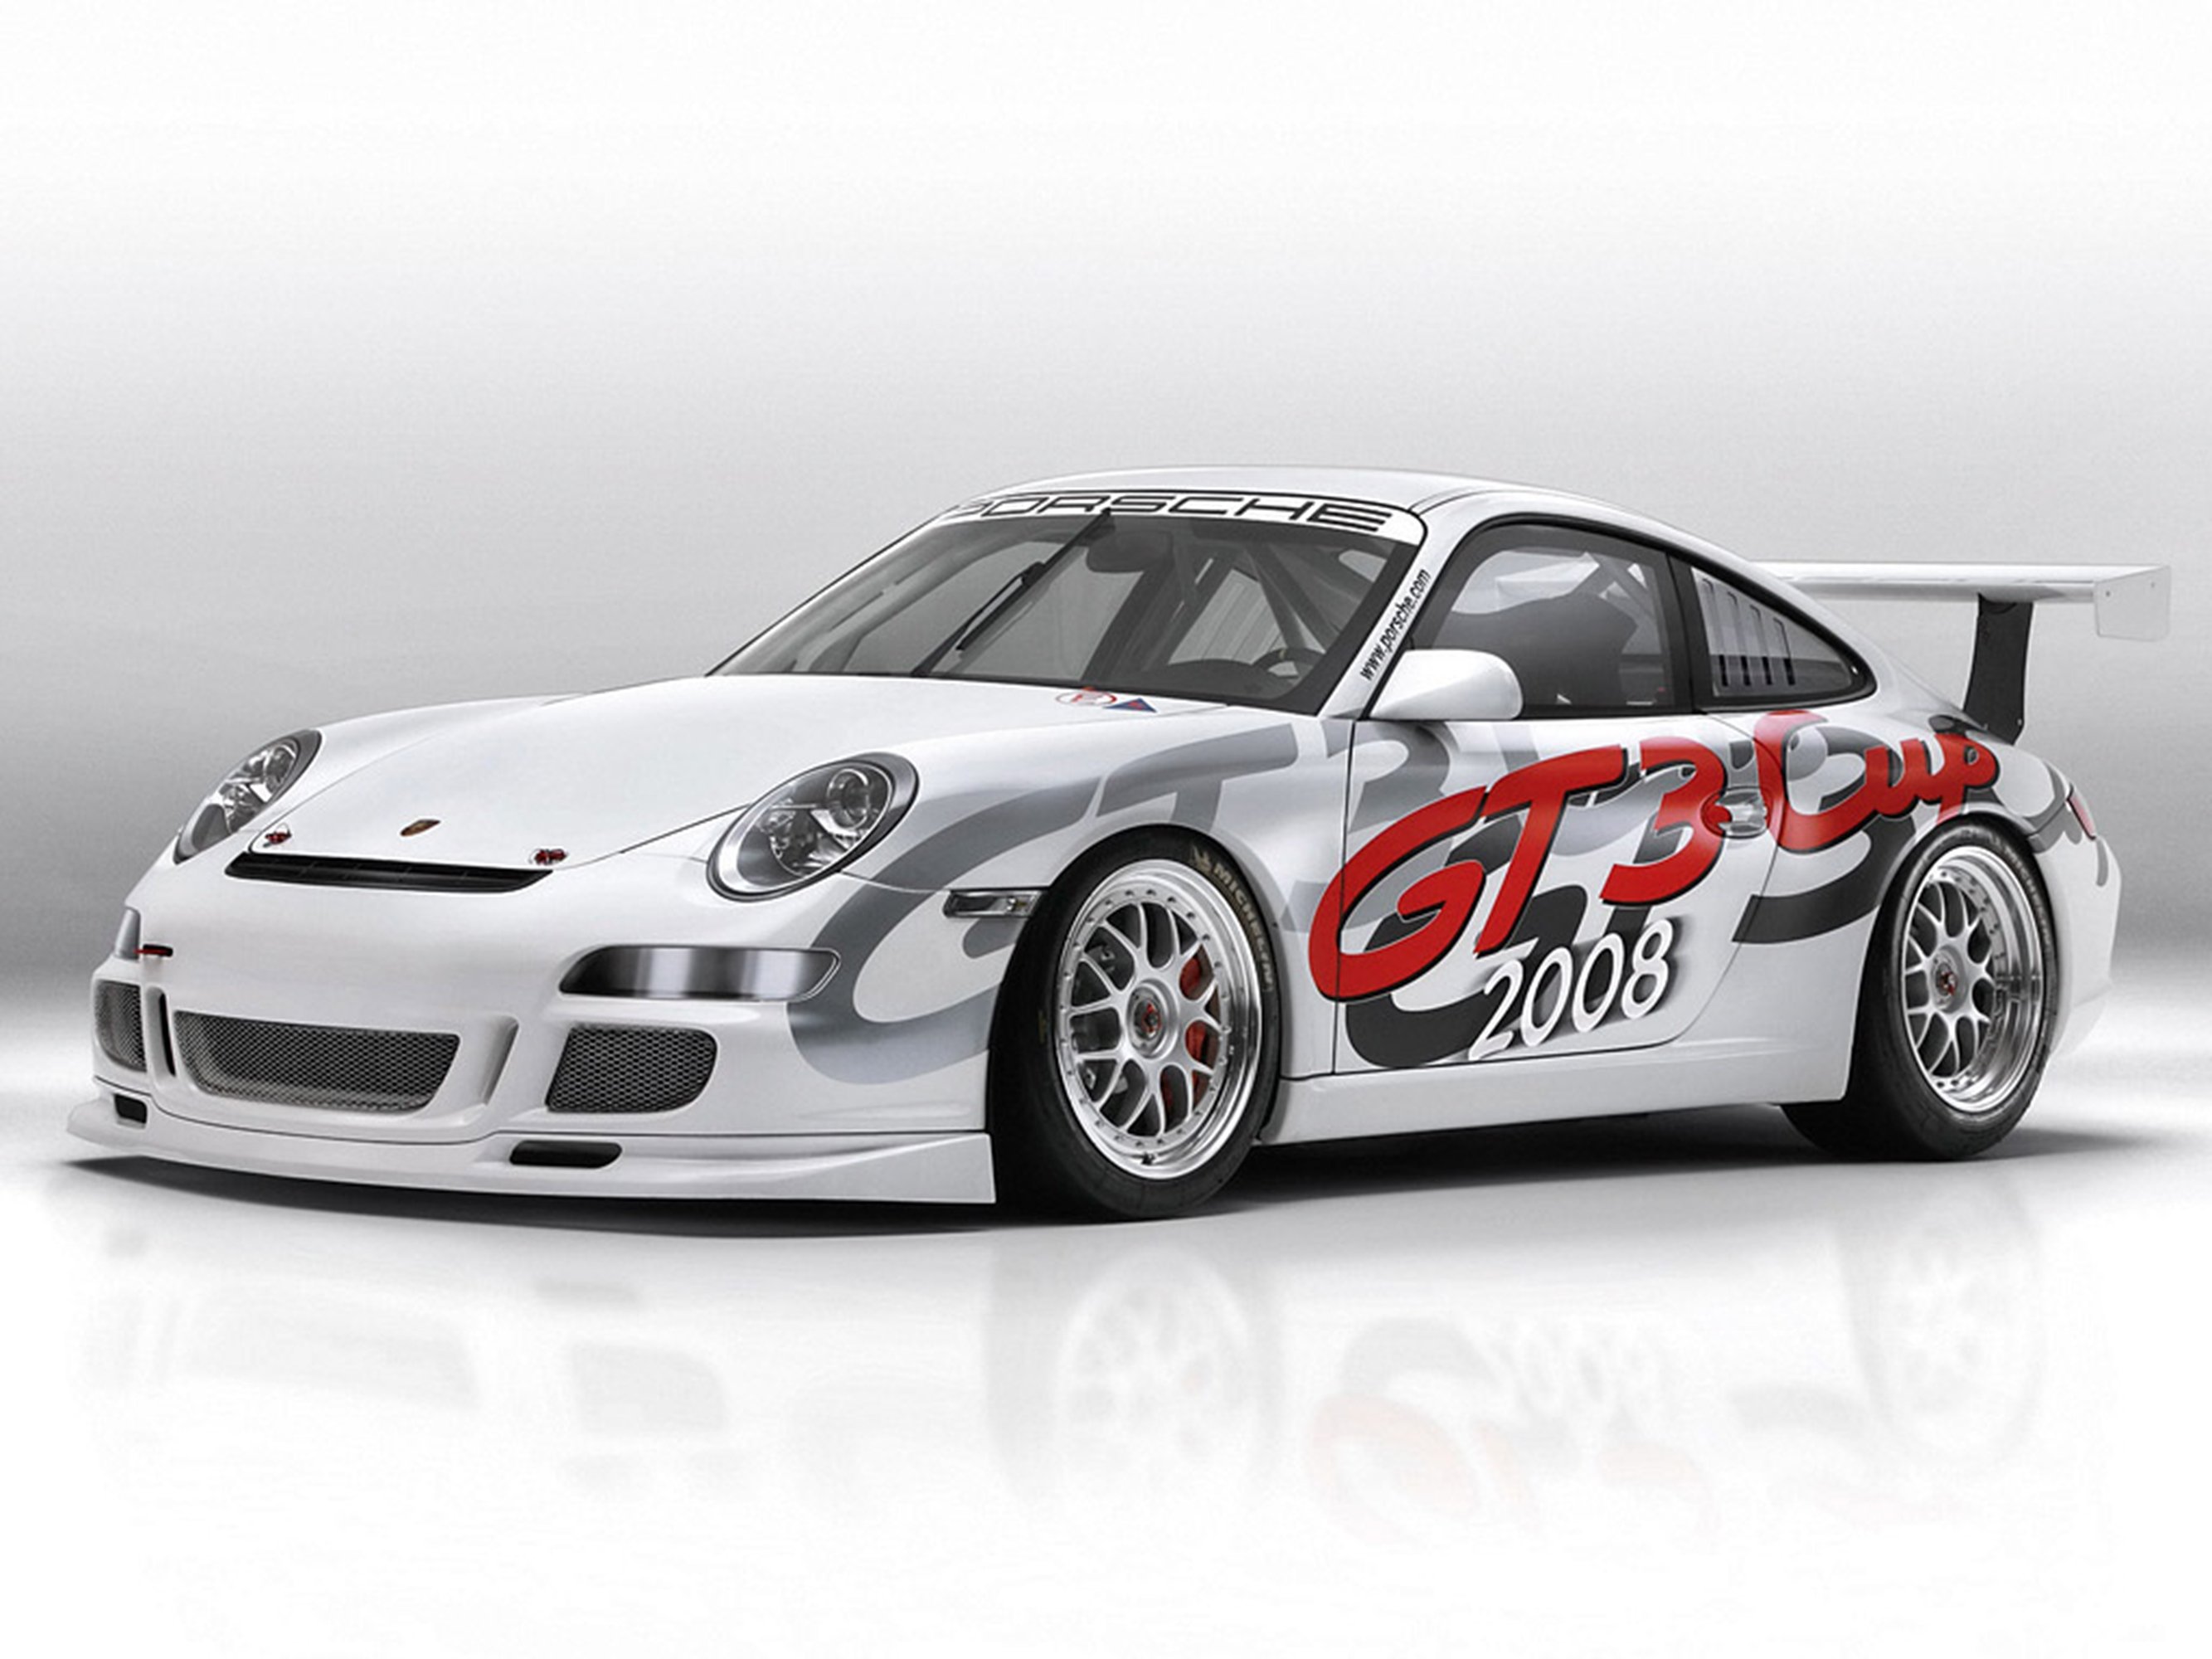 2007, Porsche, 911gt3cup1, 2667x2000 Wallpaper